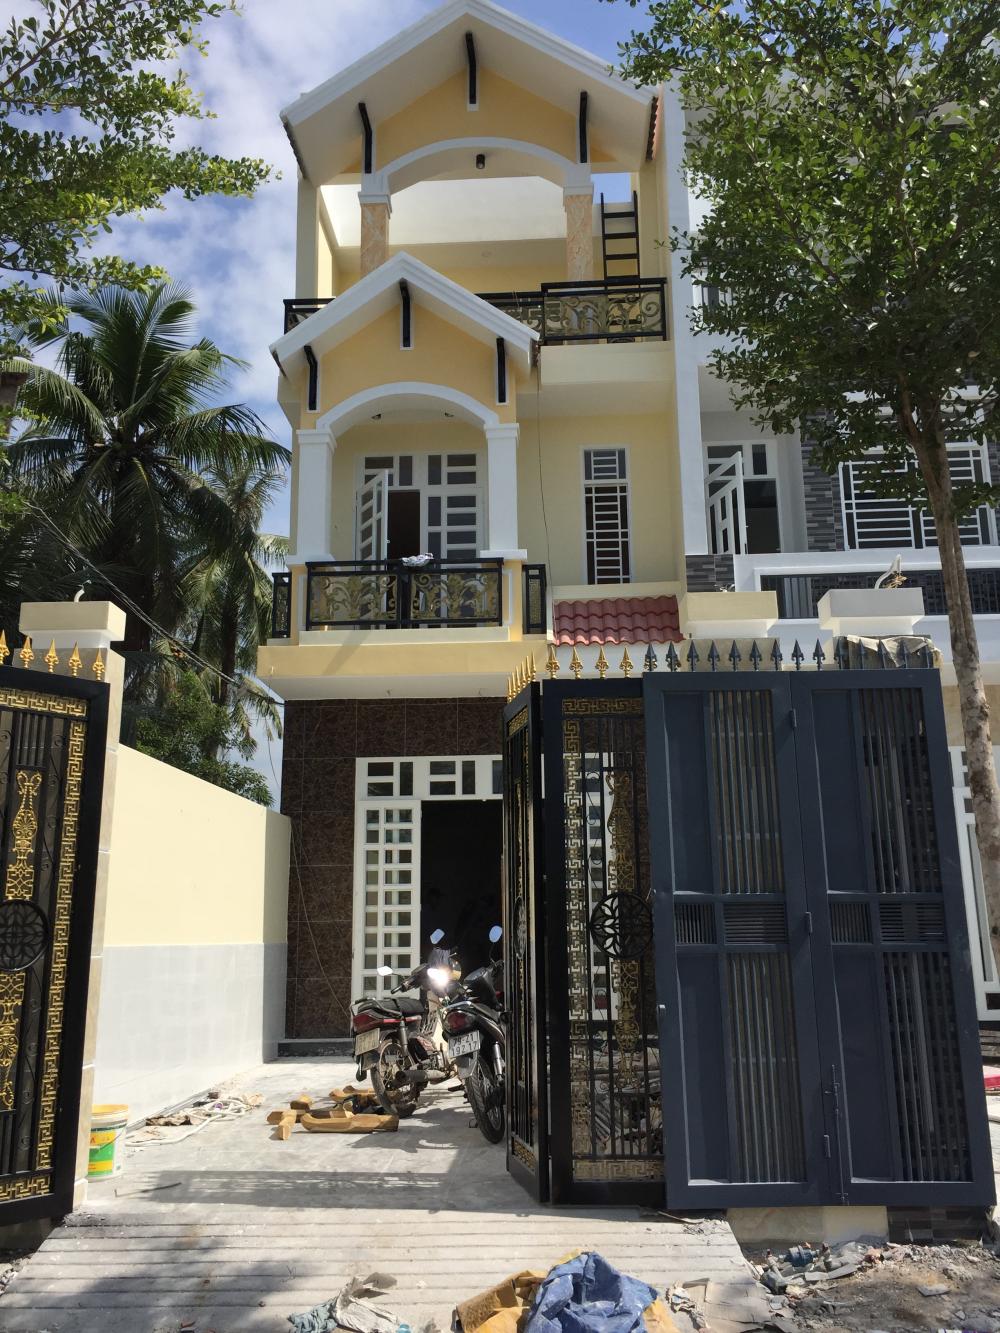 Bán nhà biệt thự liền kề đẹp mới xây gần ngã tư Bình Phước, Thủ Đức, Hồ Chí Minh